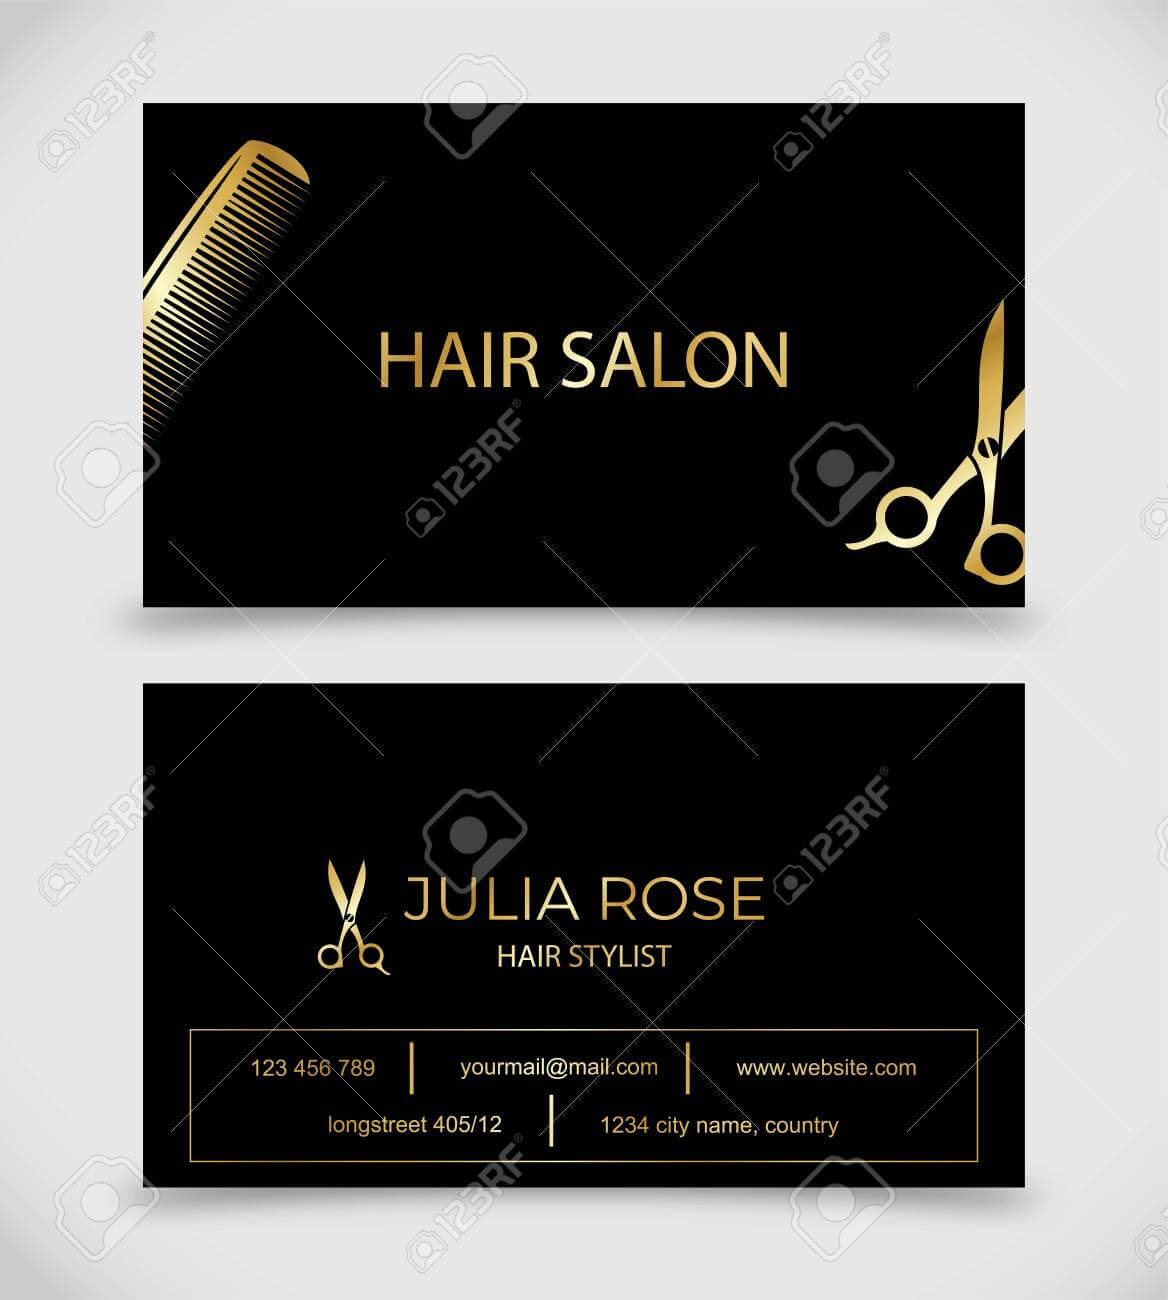 Hair Salon, Hair Stylist Business Card Vector Template With Regard To Hair Salon Business Card Template